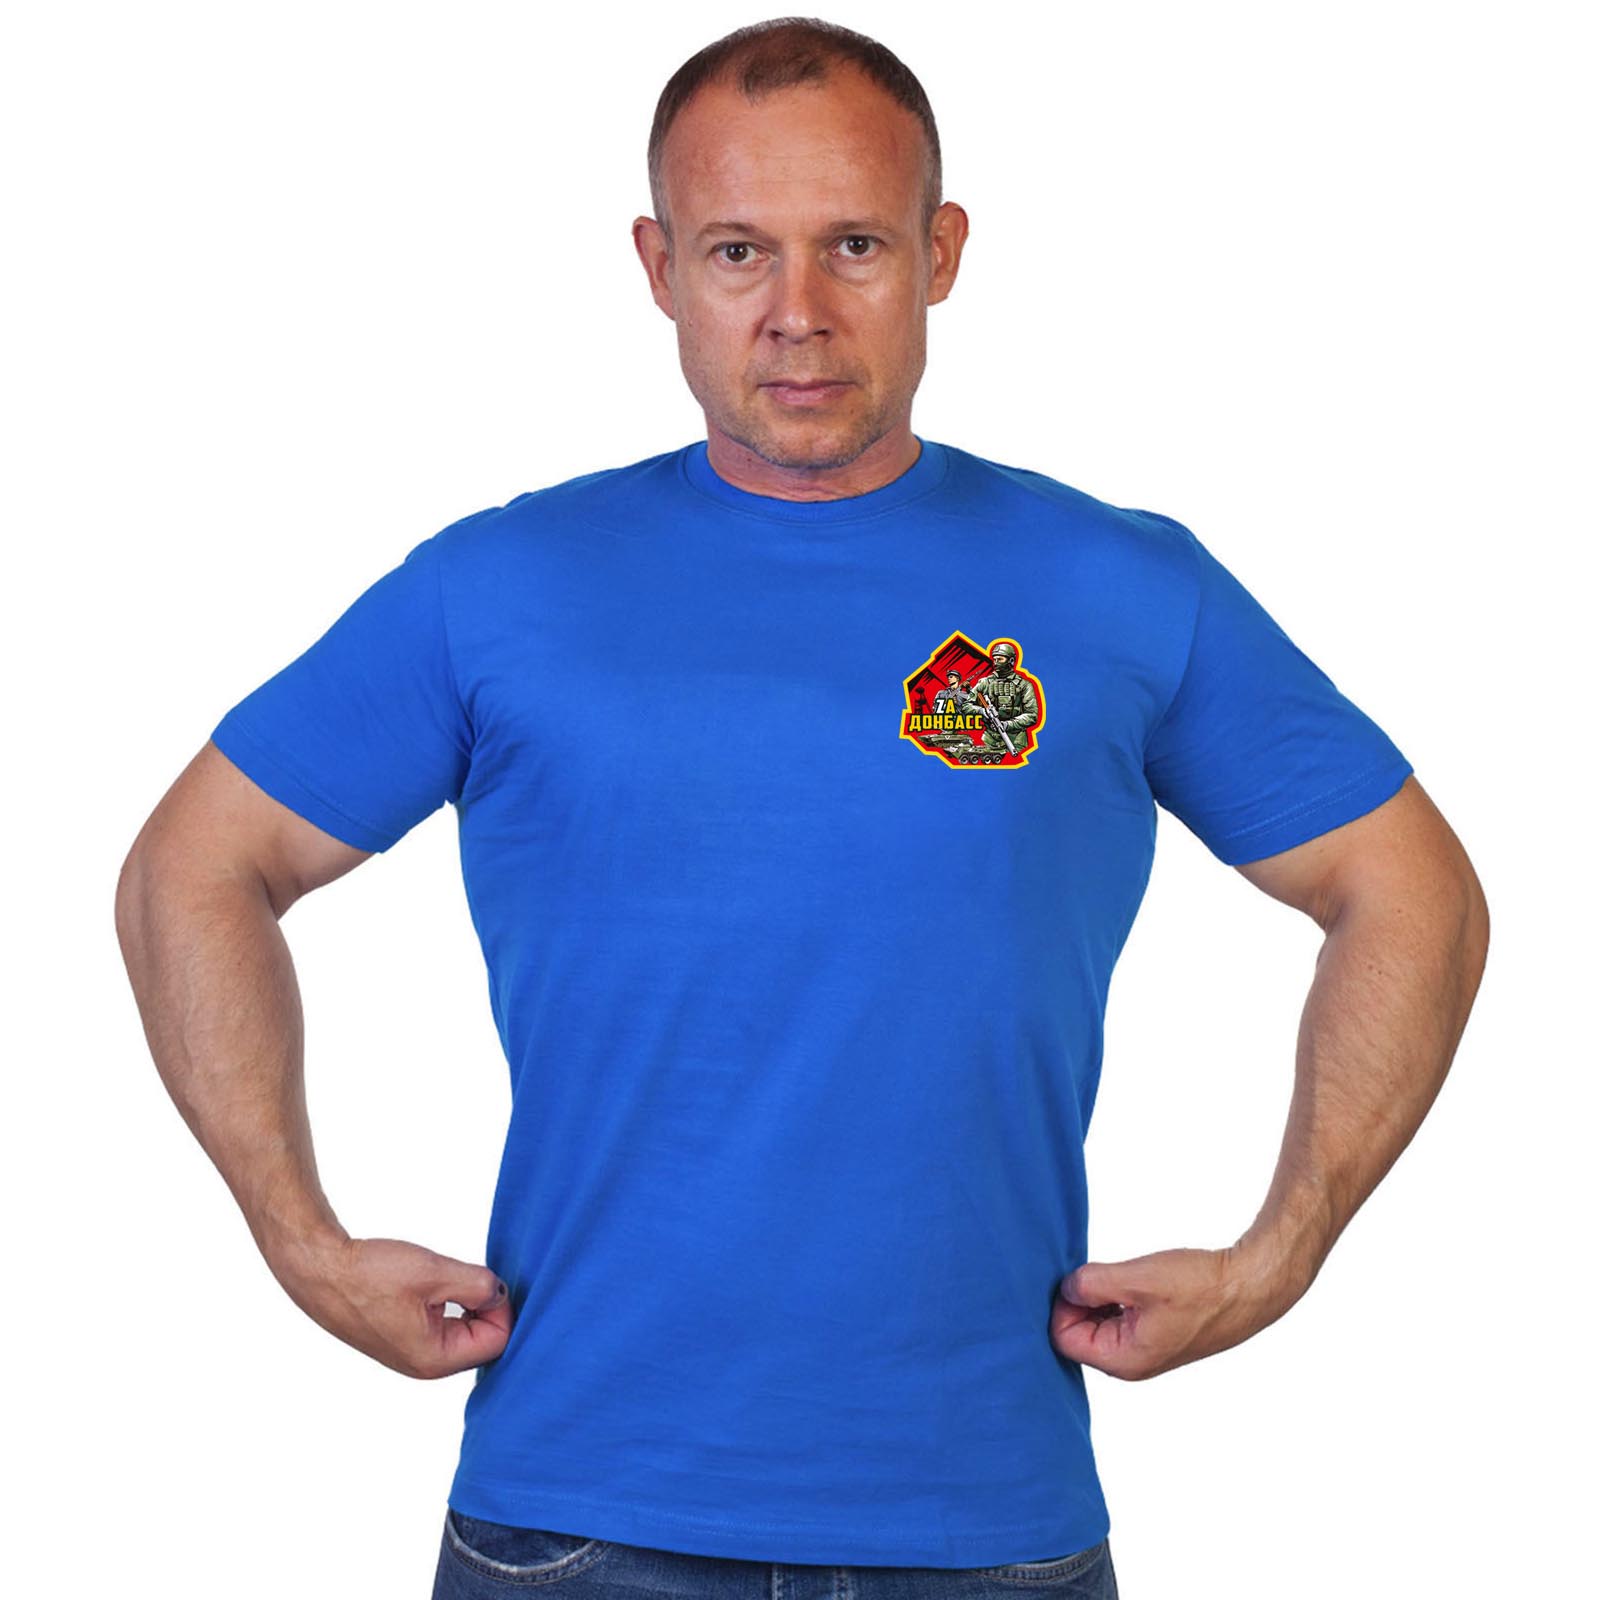 Васильковая футболка с трансфером "Zа Донбасс"